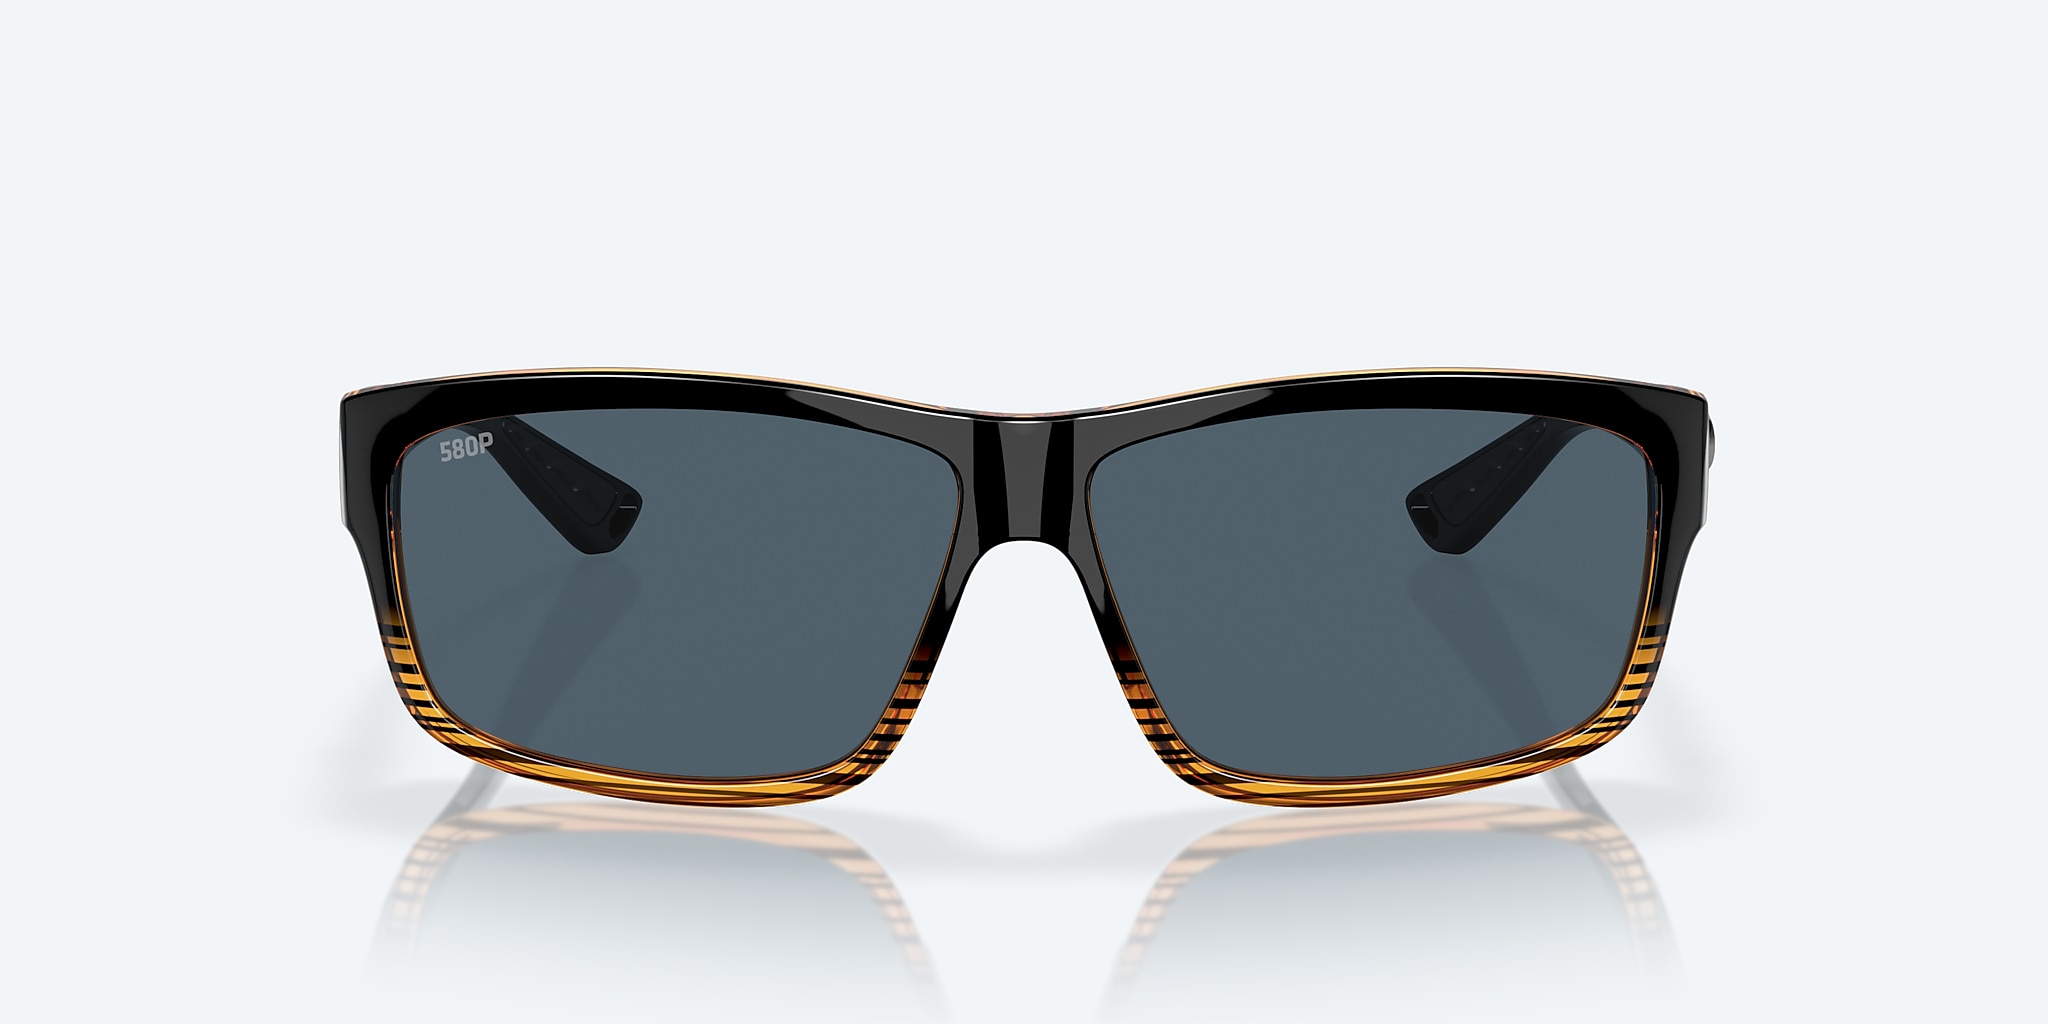 Costa Del Mar Cut 580P Sunglasses